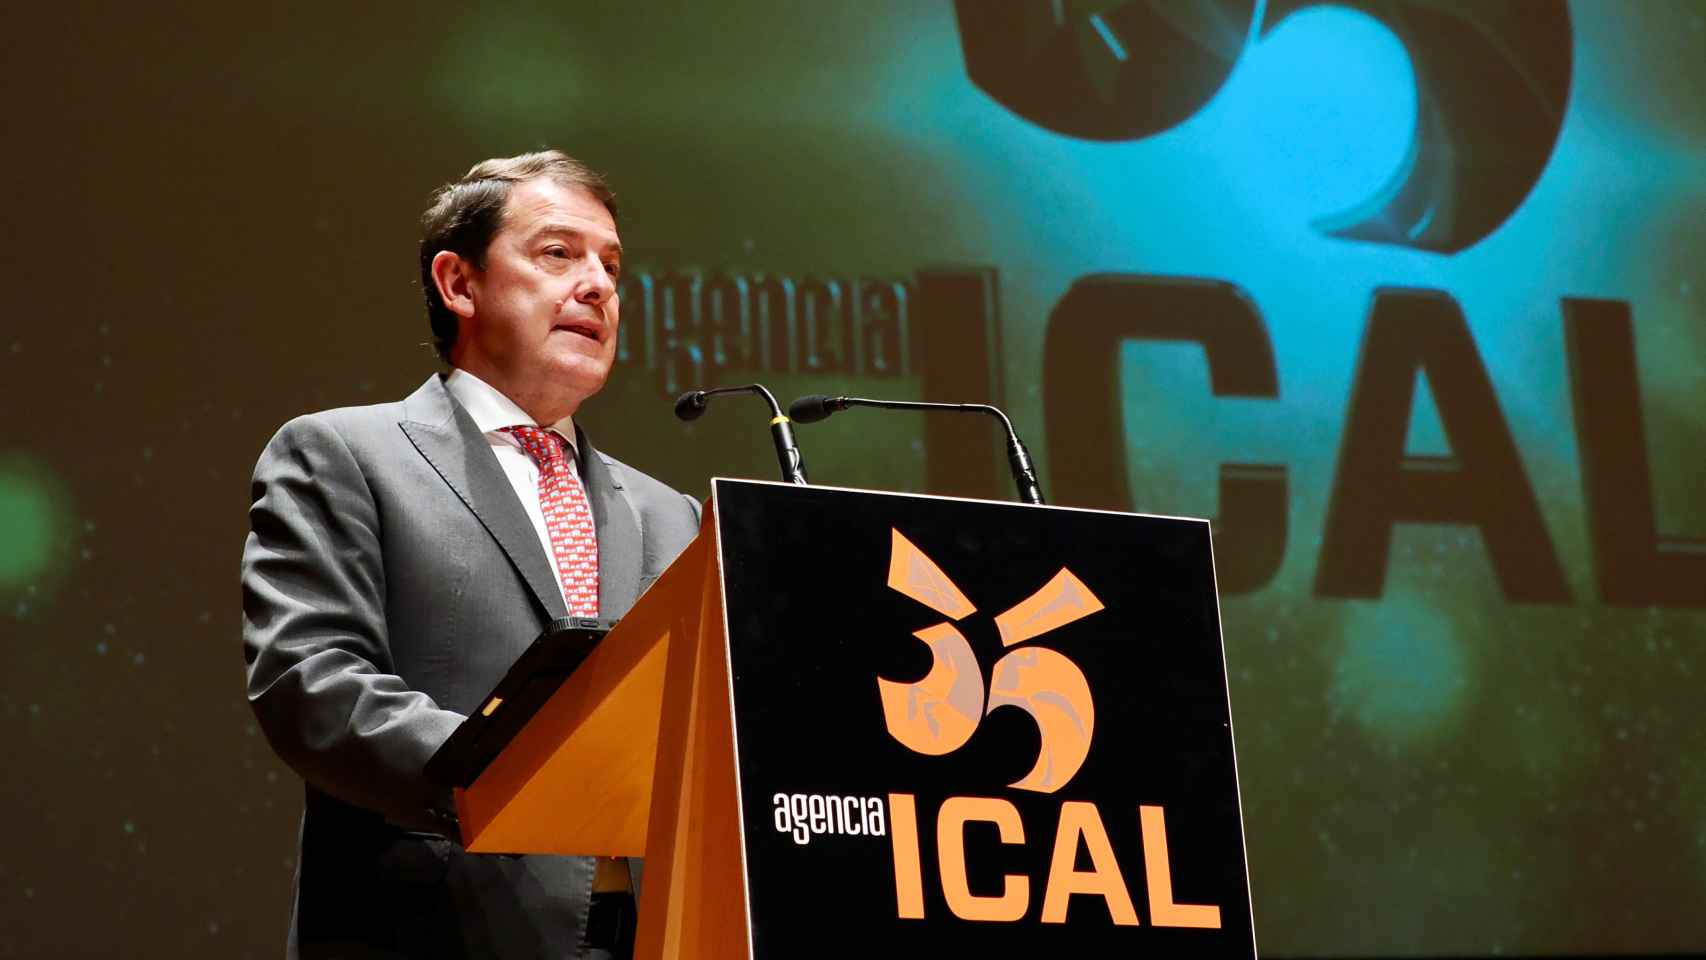 El presidente de la Junta, Alfonso Fernández Mañueco, durante la celebración del XXXV aniversario de la Agencia Ical